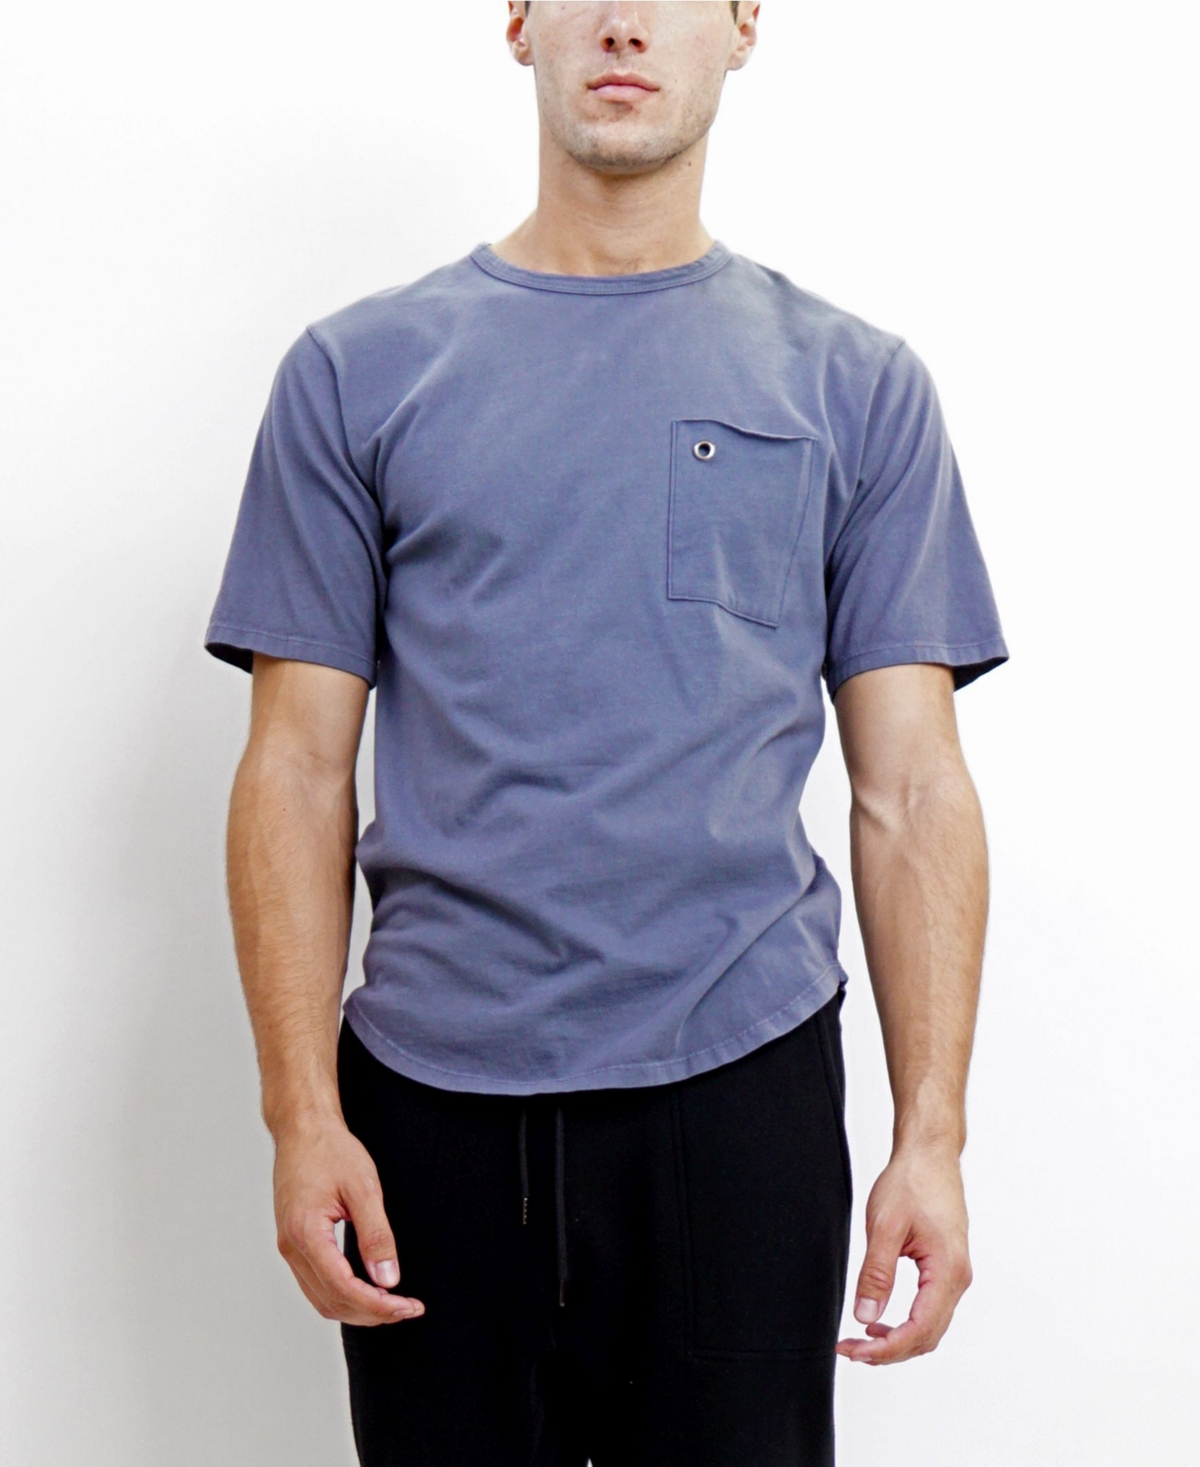 Men's Short-Sleeve T-Shirt - White